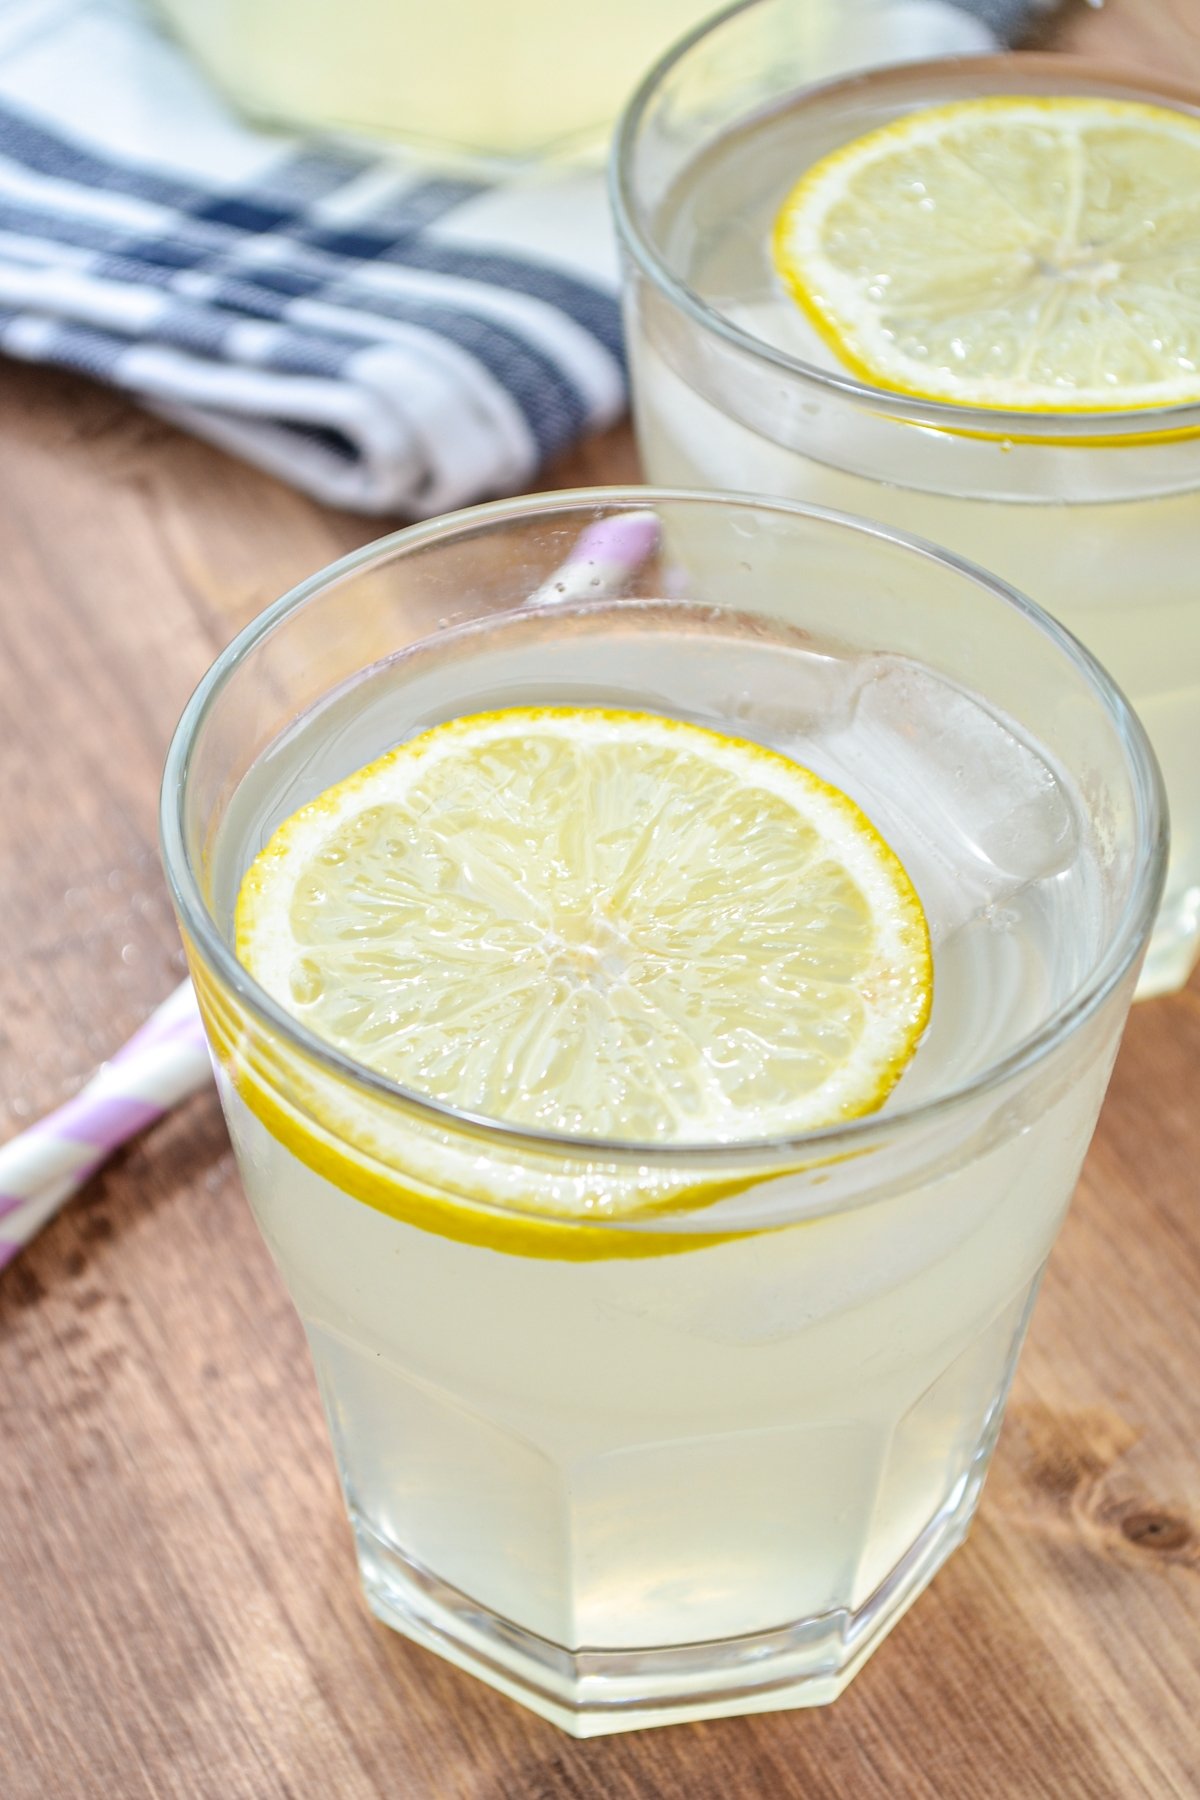 Two glasses of instant pot lemonade, garnished with a lemon slice.